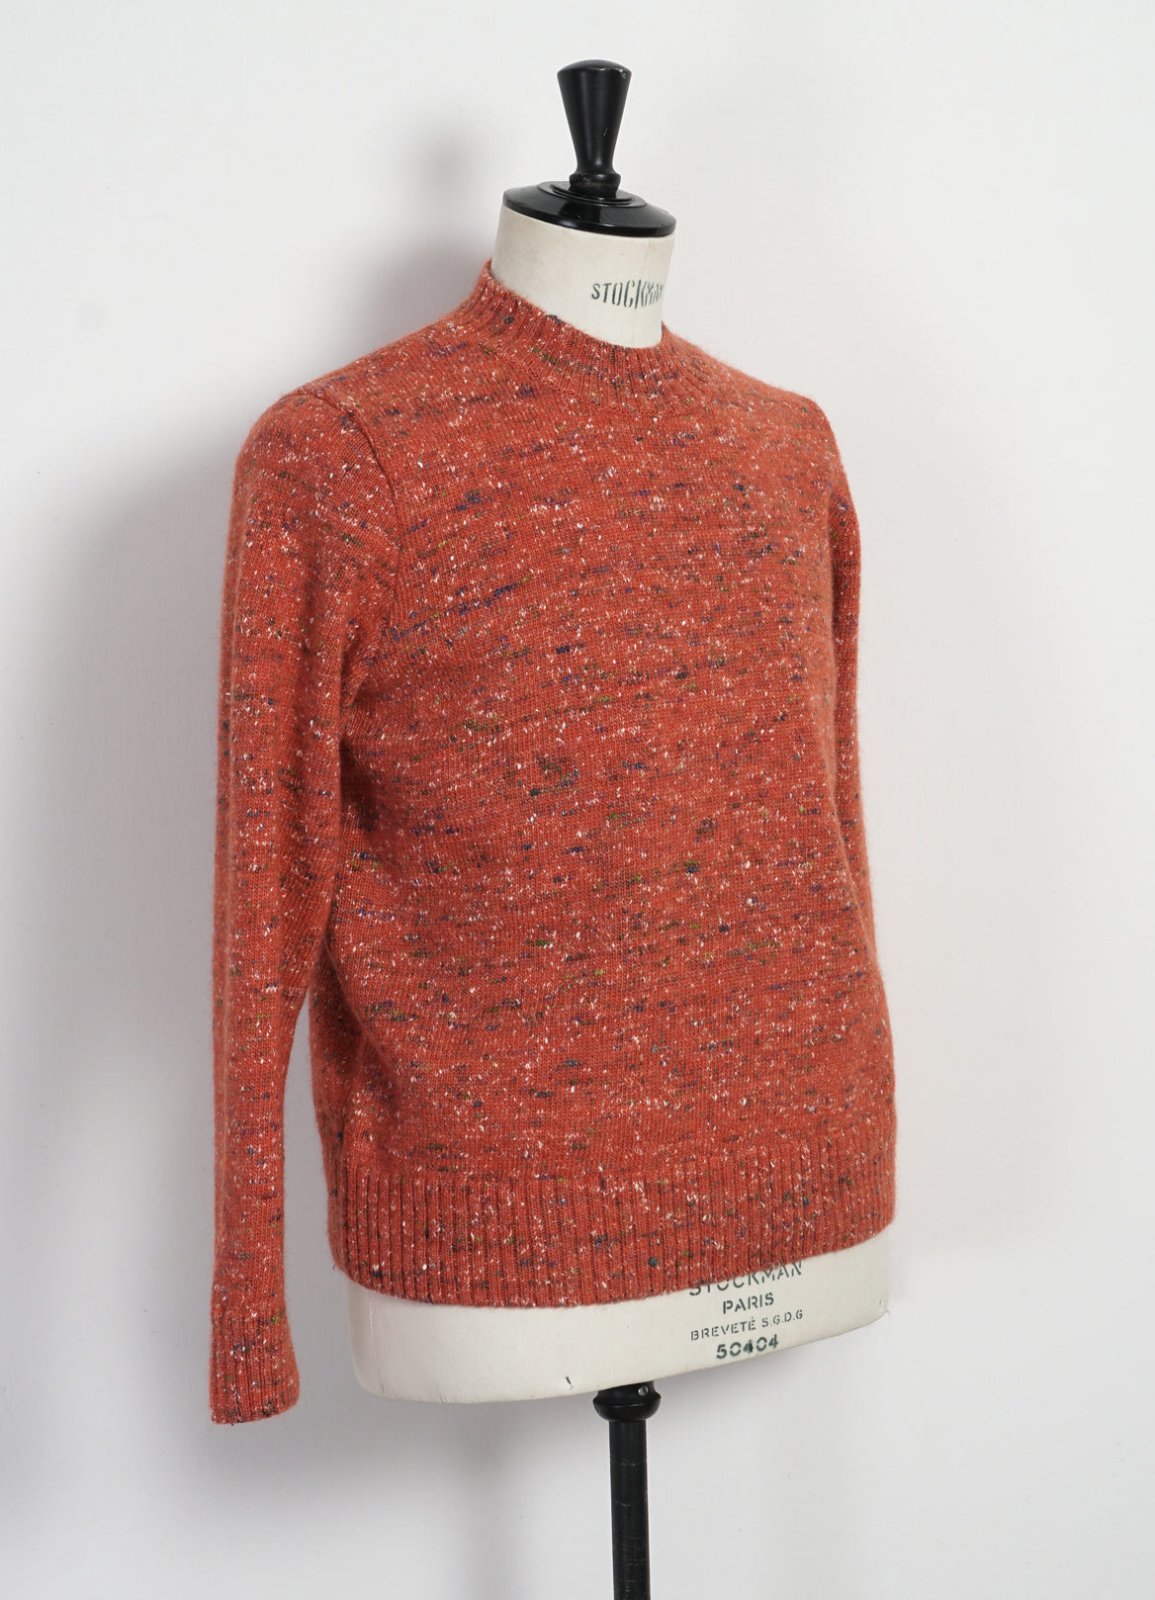 HANSEN GARMENTS - EIVIND | Crew Neck Rib Sweater | Donegal Coral - HANSEN Garments